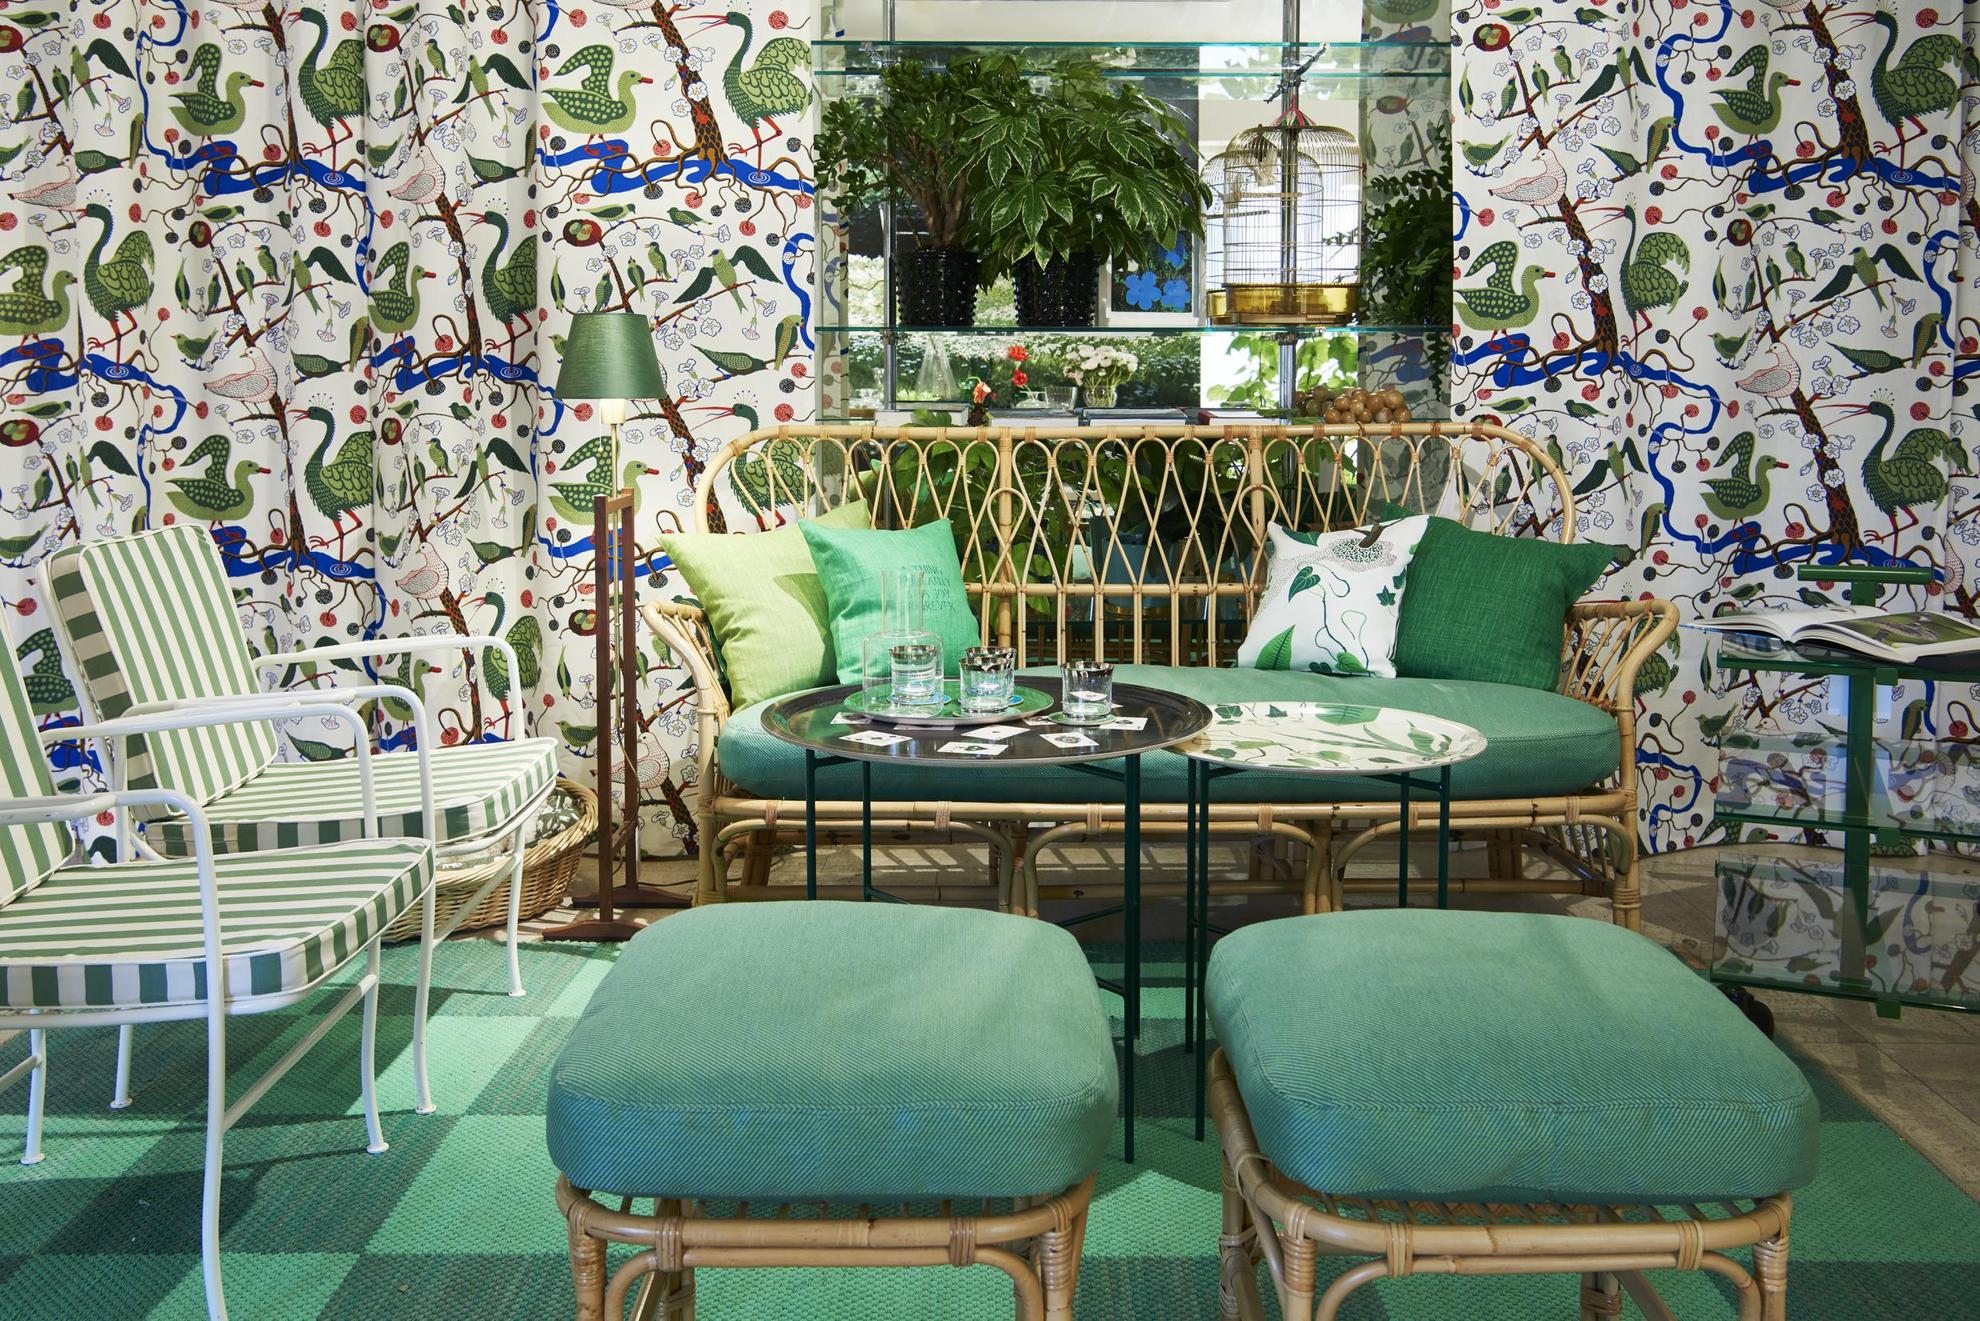 Un environnement vert dans un magasin de design. Un canapé, deux fauteuils et deux poufs sont disposés autour d'une table. Derrière les meubles sont installés des rideaux colorés avec des oiseaux en vert.